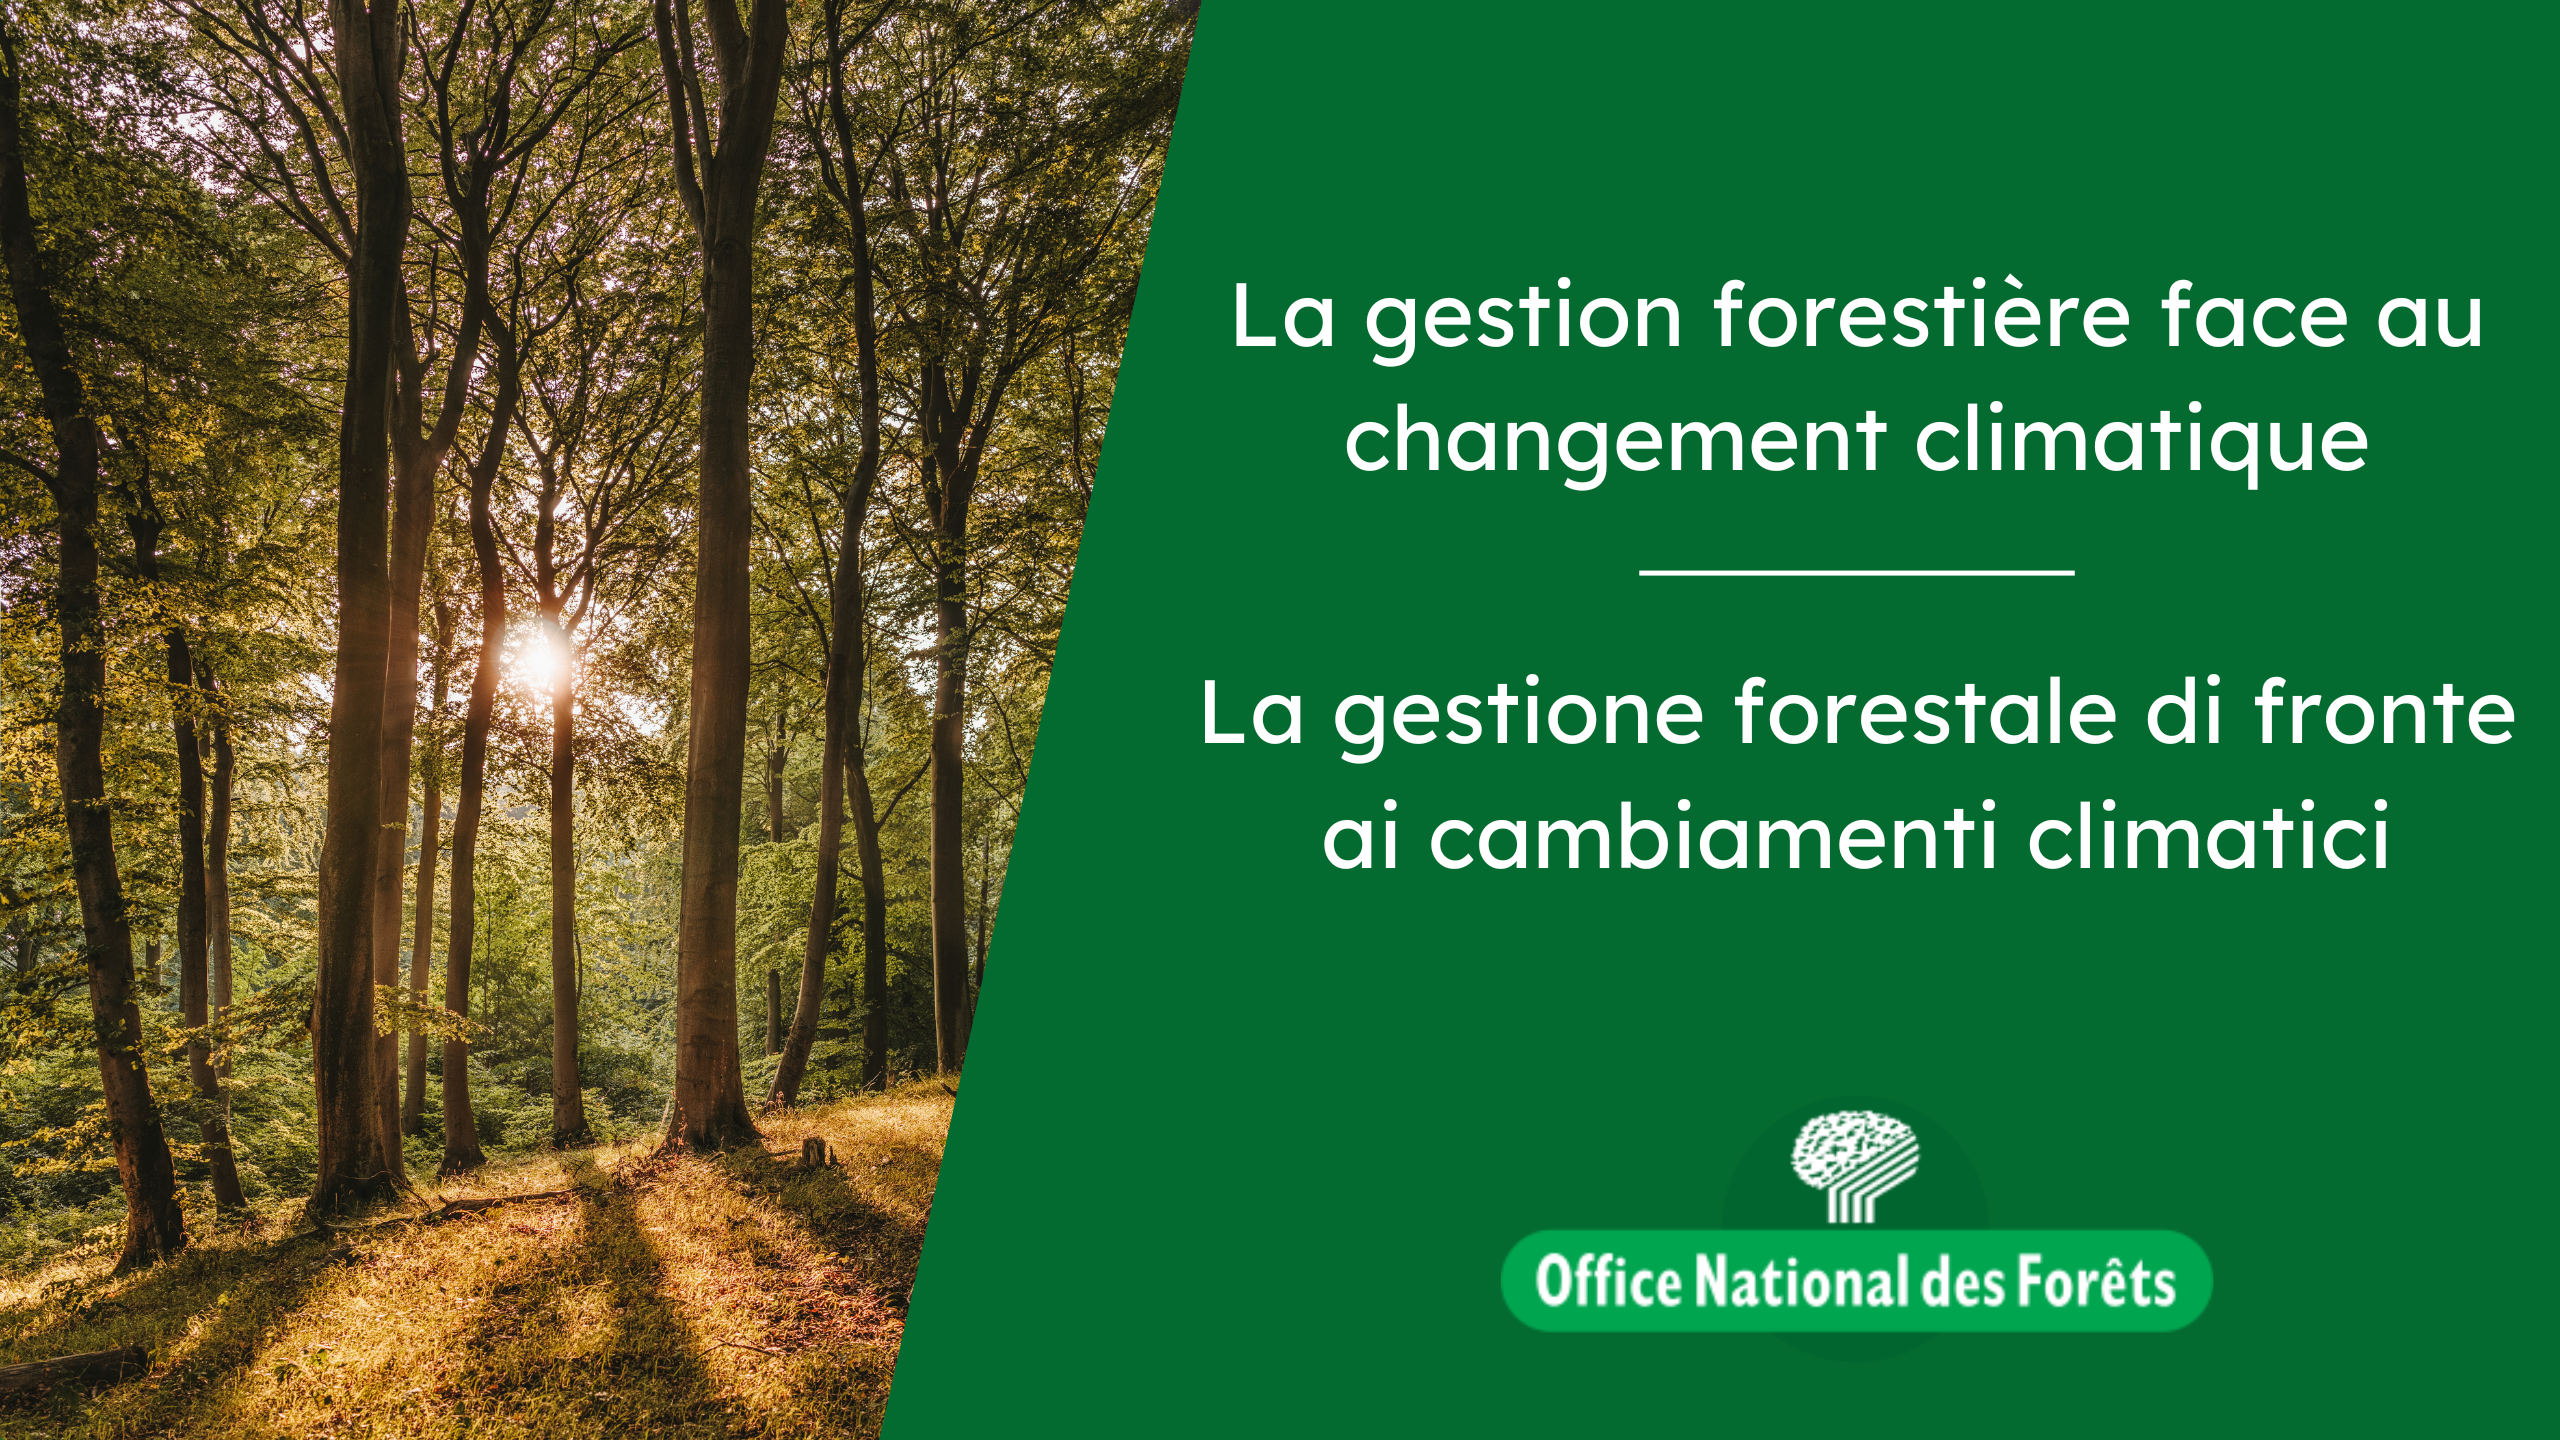 La gestion forestière face au changement climatique